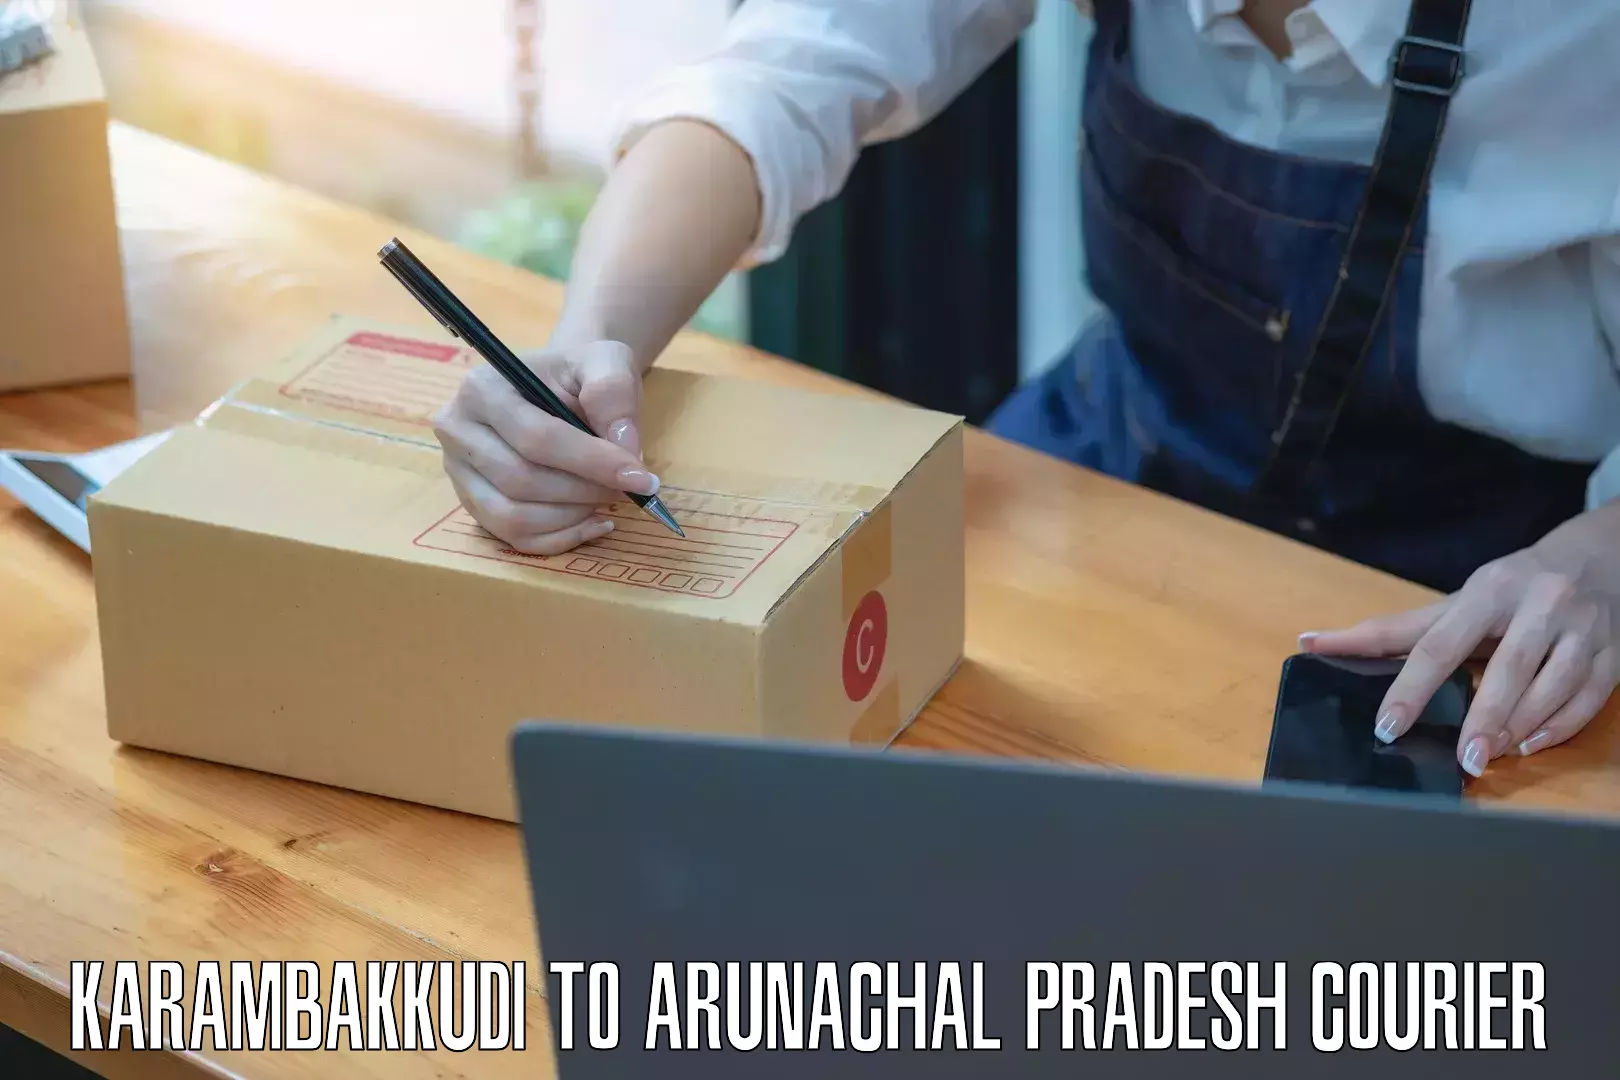 Large package courier Karambakkudi to Arunachal Pradesh